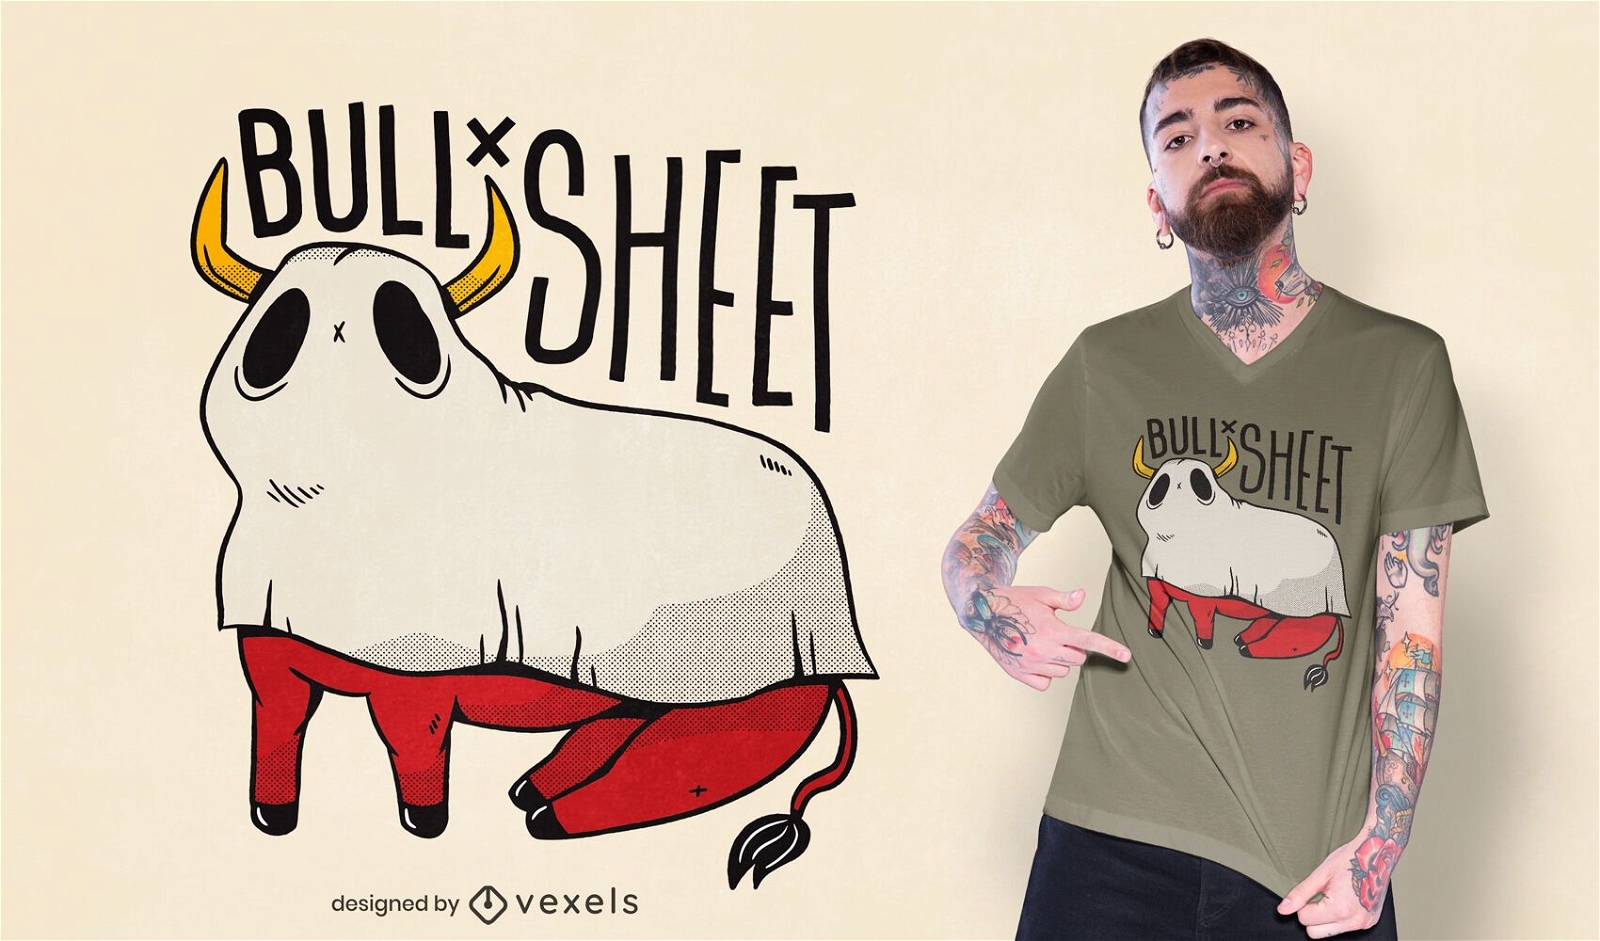 Bull sheet t-shirt design